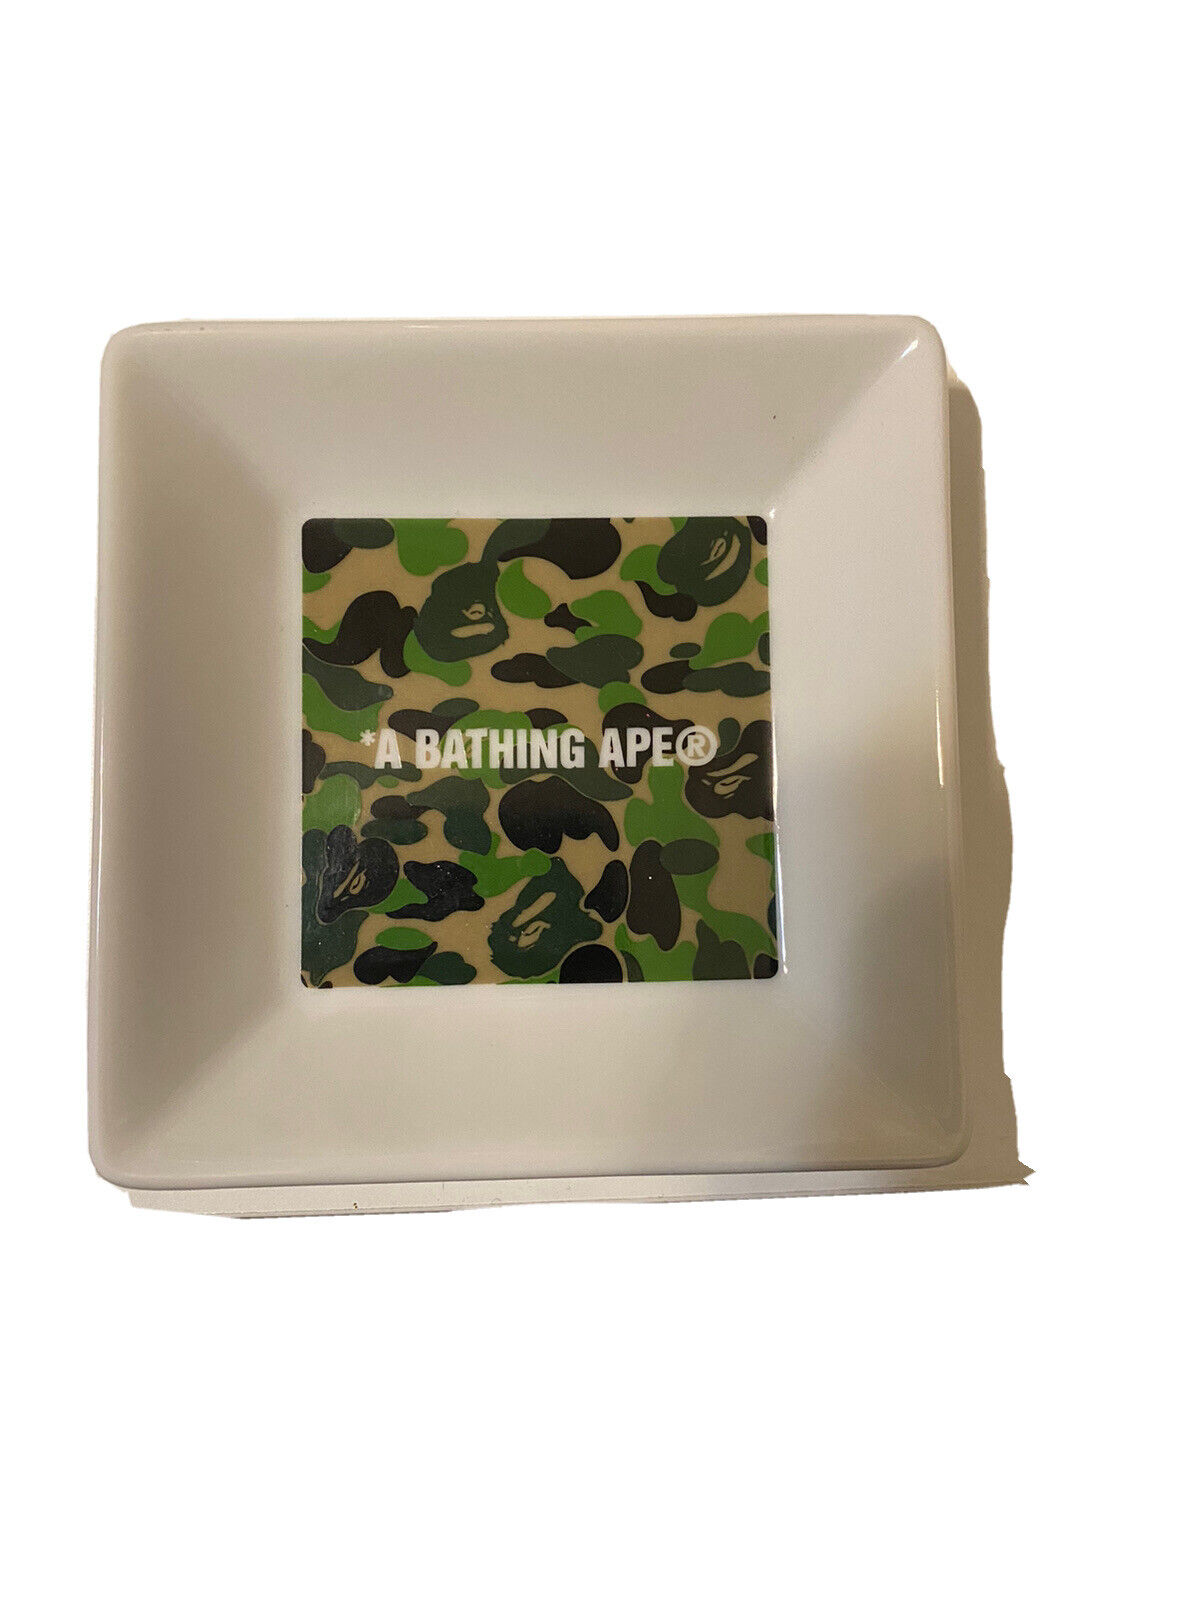 A BATHING APE BAPE Ash Tray ashtray ABC Camo Color Green White 2019 Nigo Sta